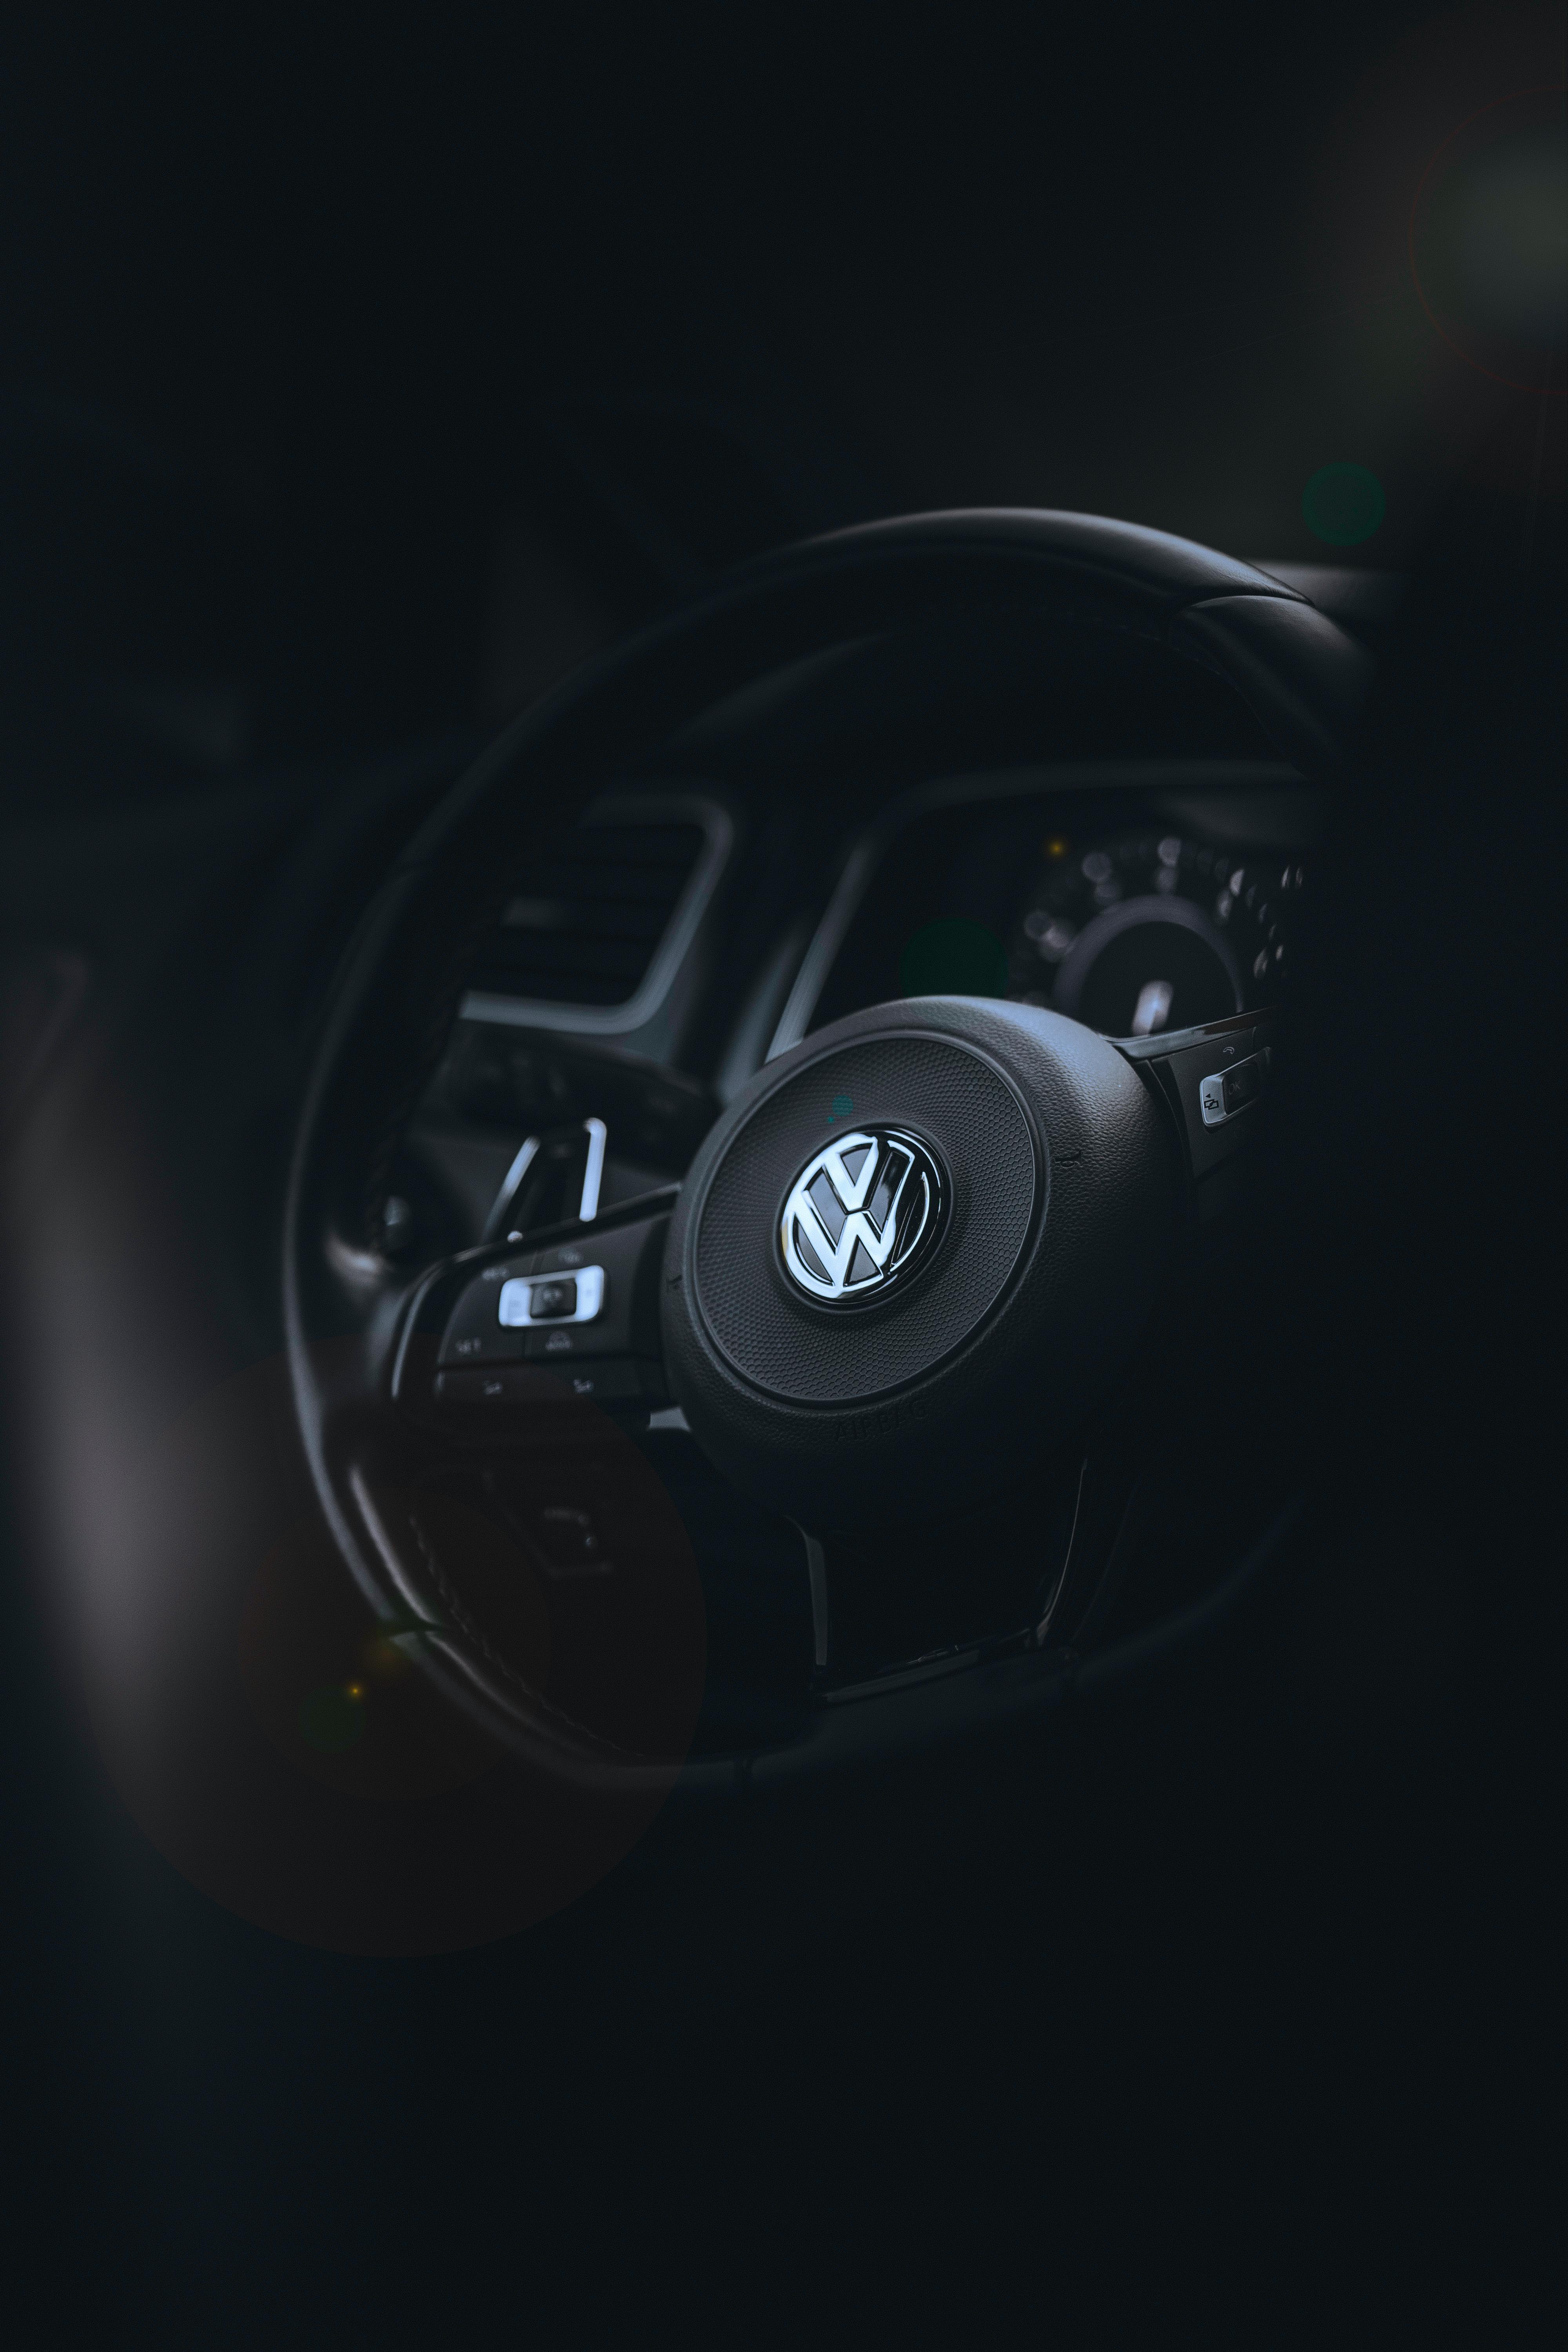 Steering wheel emblem | Toyota Sienna Forum - siennachat.com